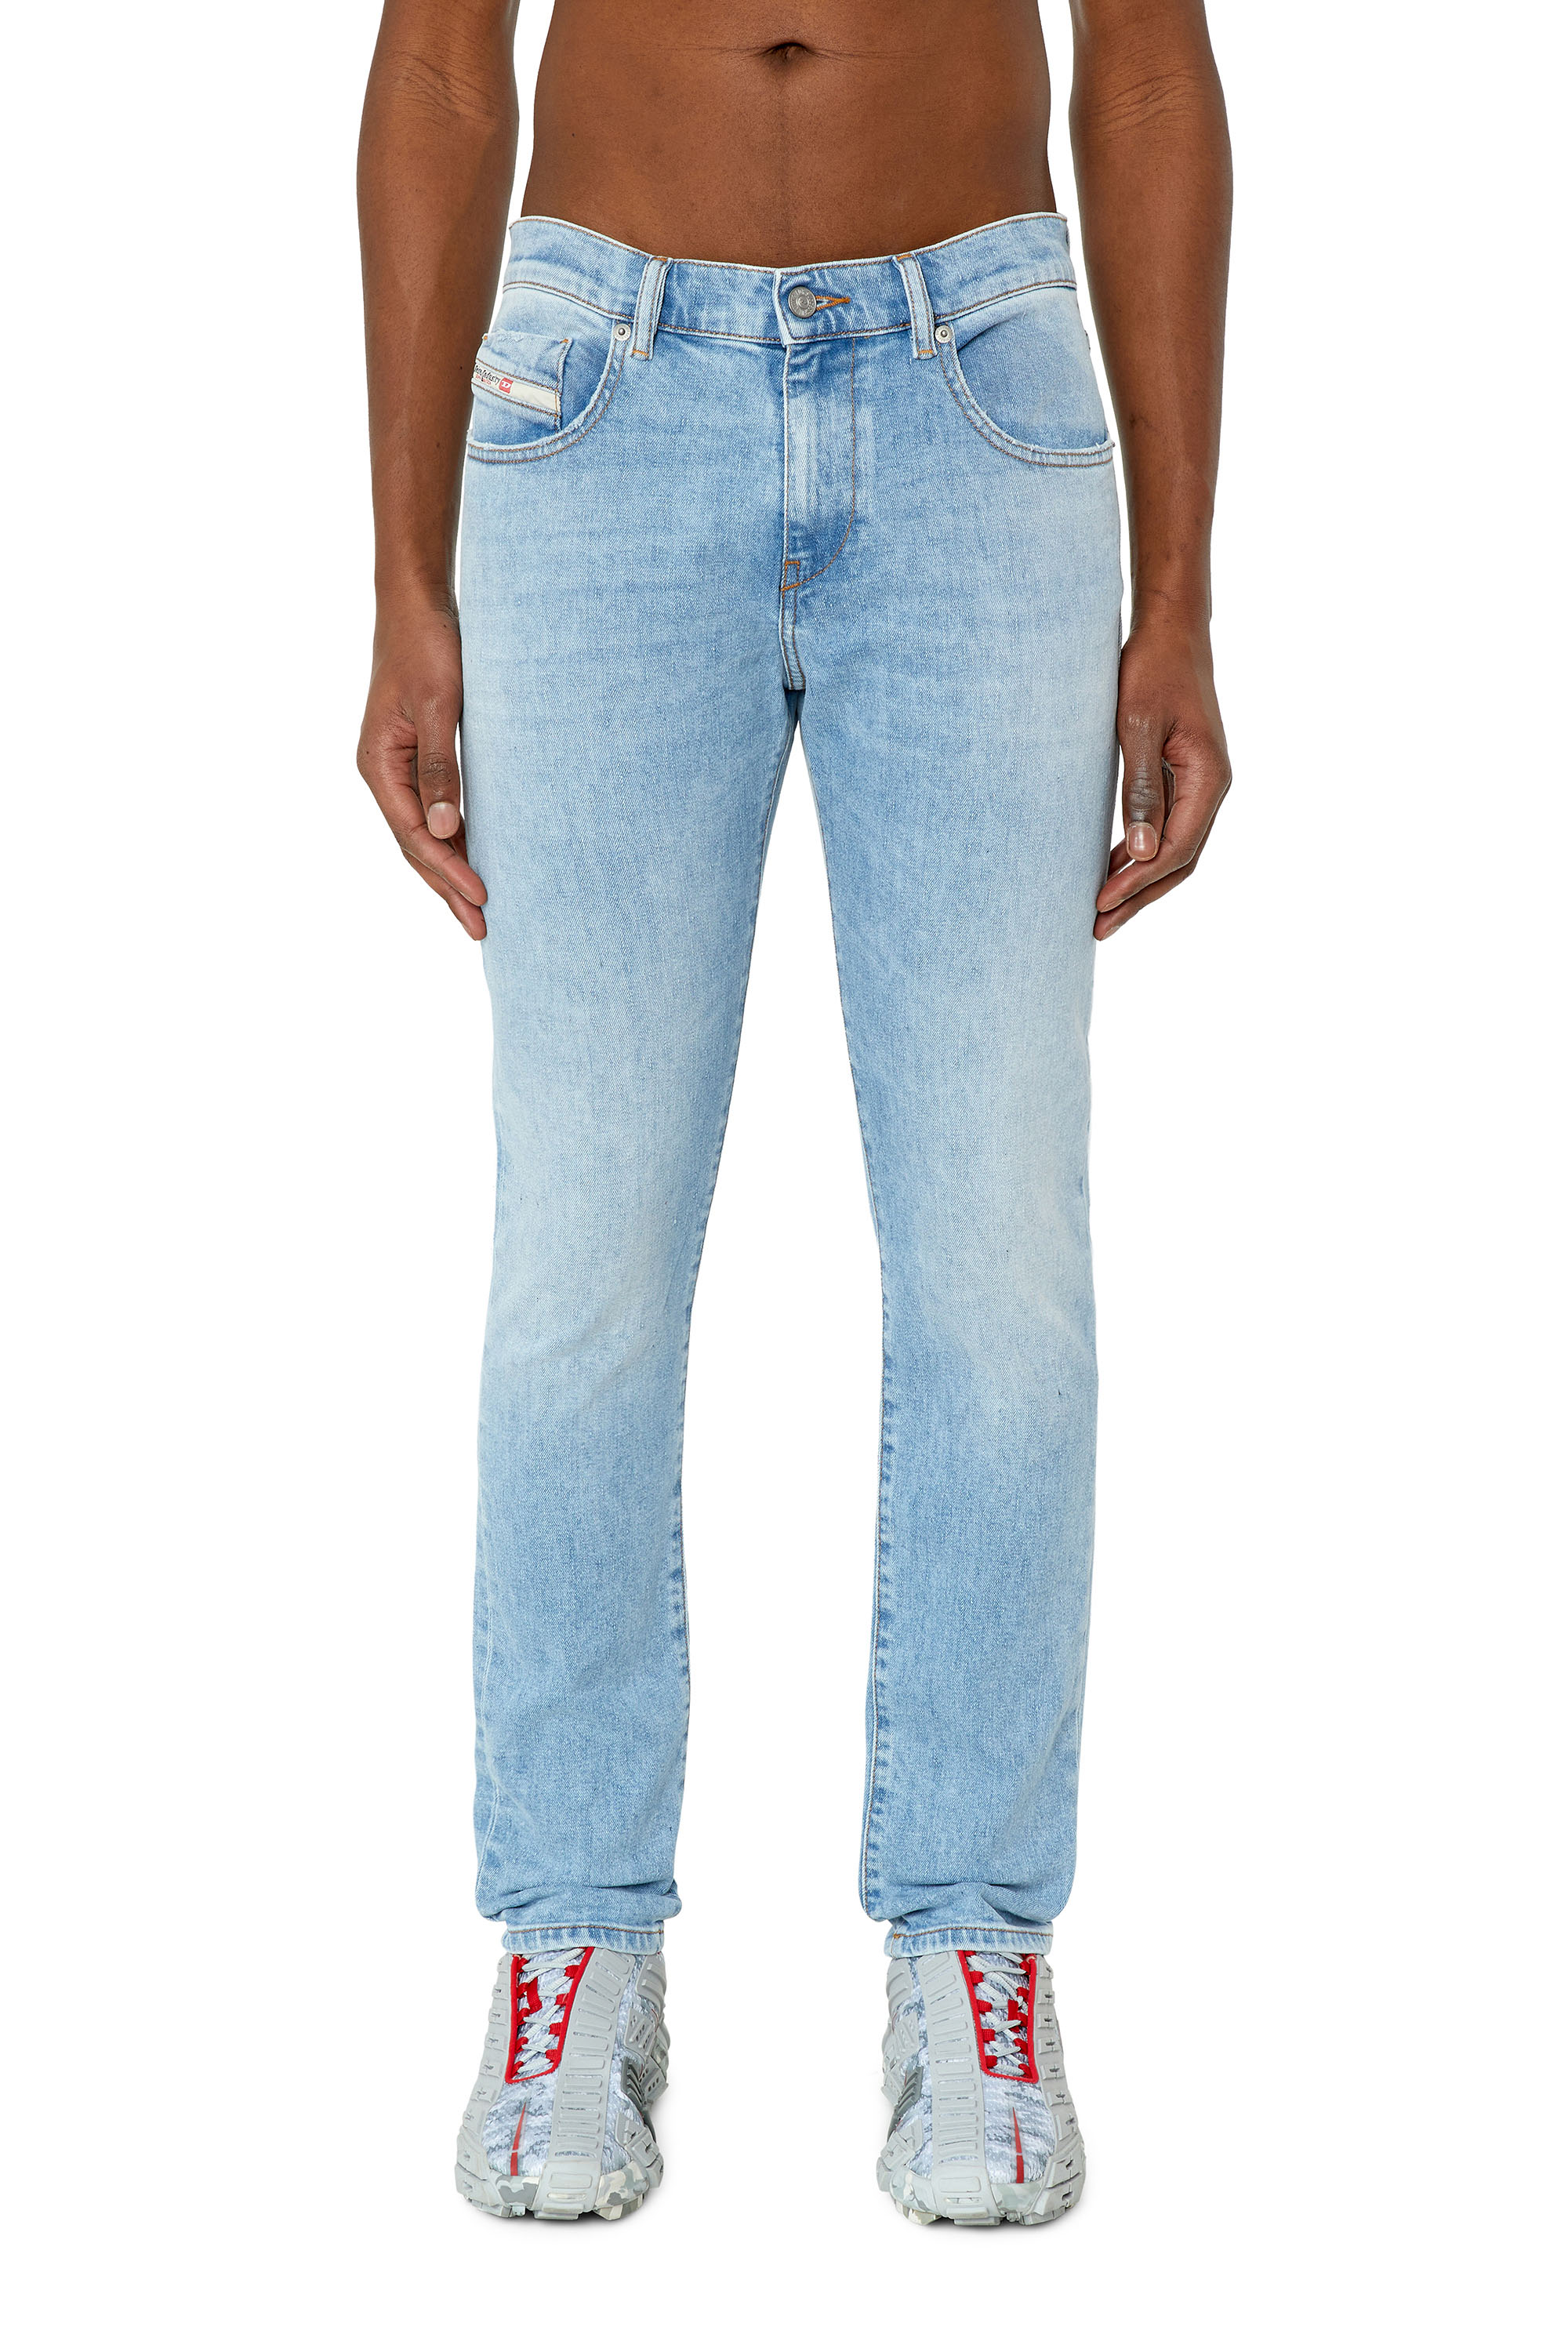 Diesel - Slim Jeans 2019 D-Strukt 09F41,  - Image 2